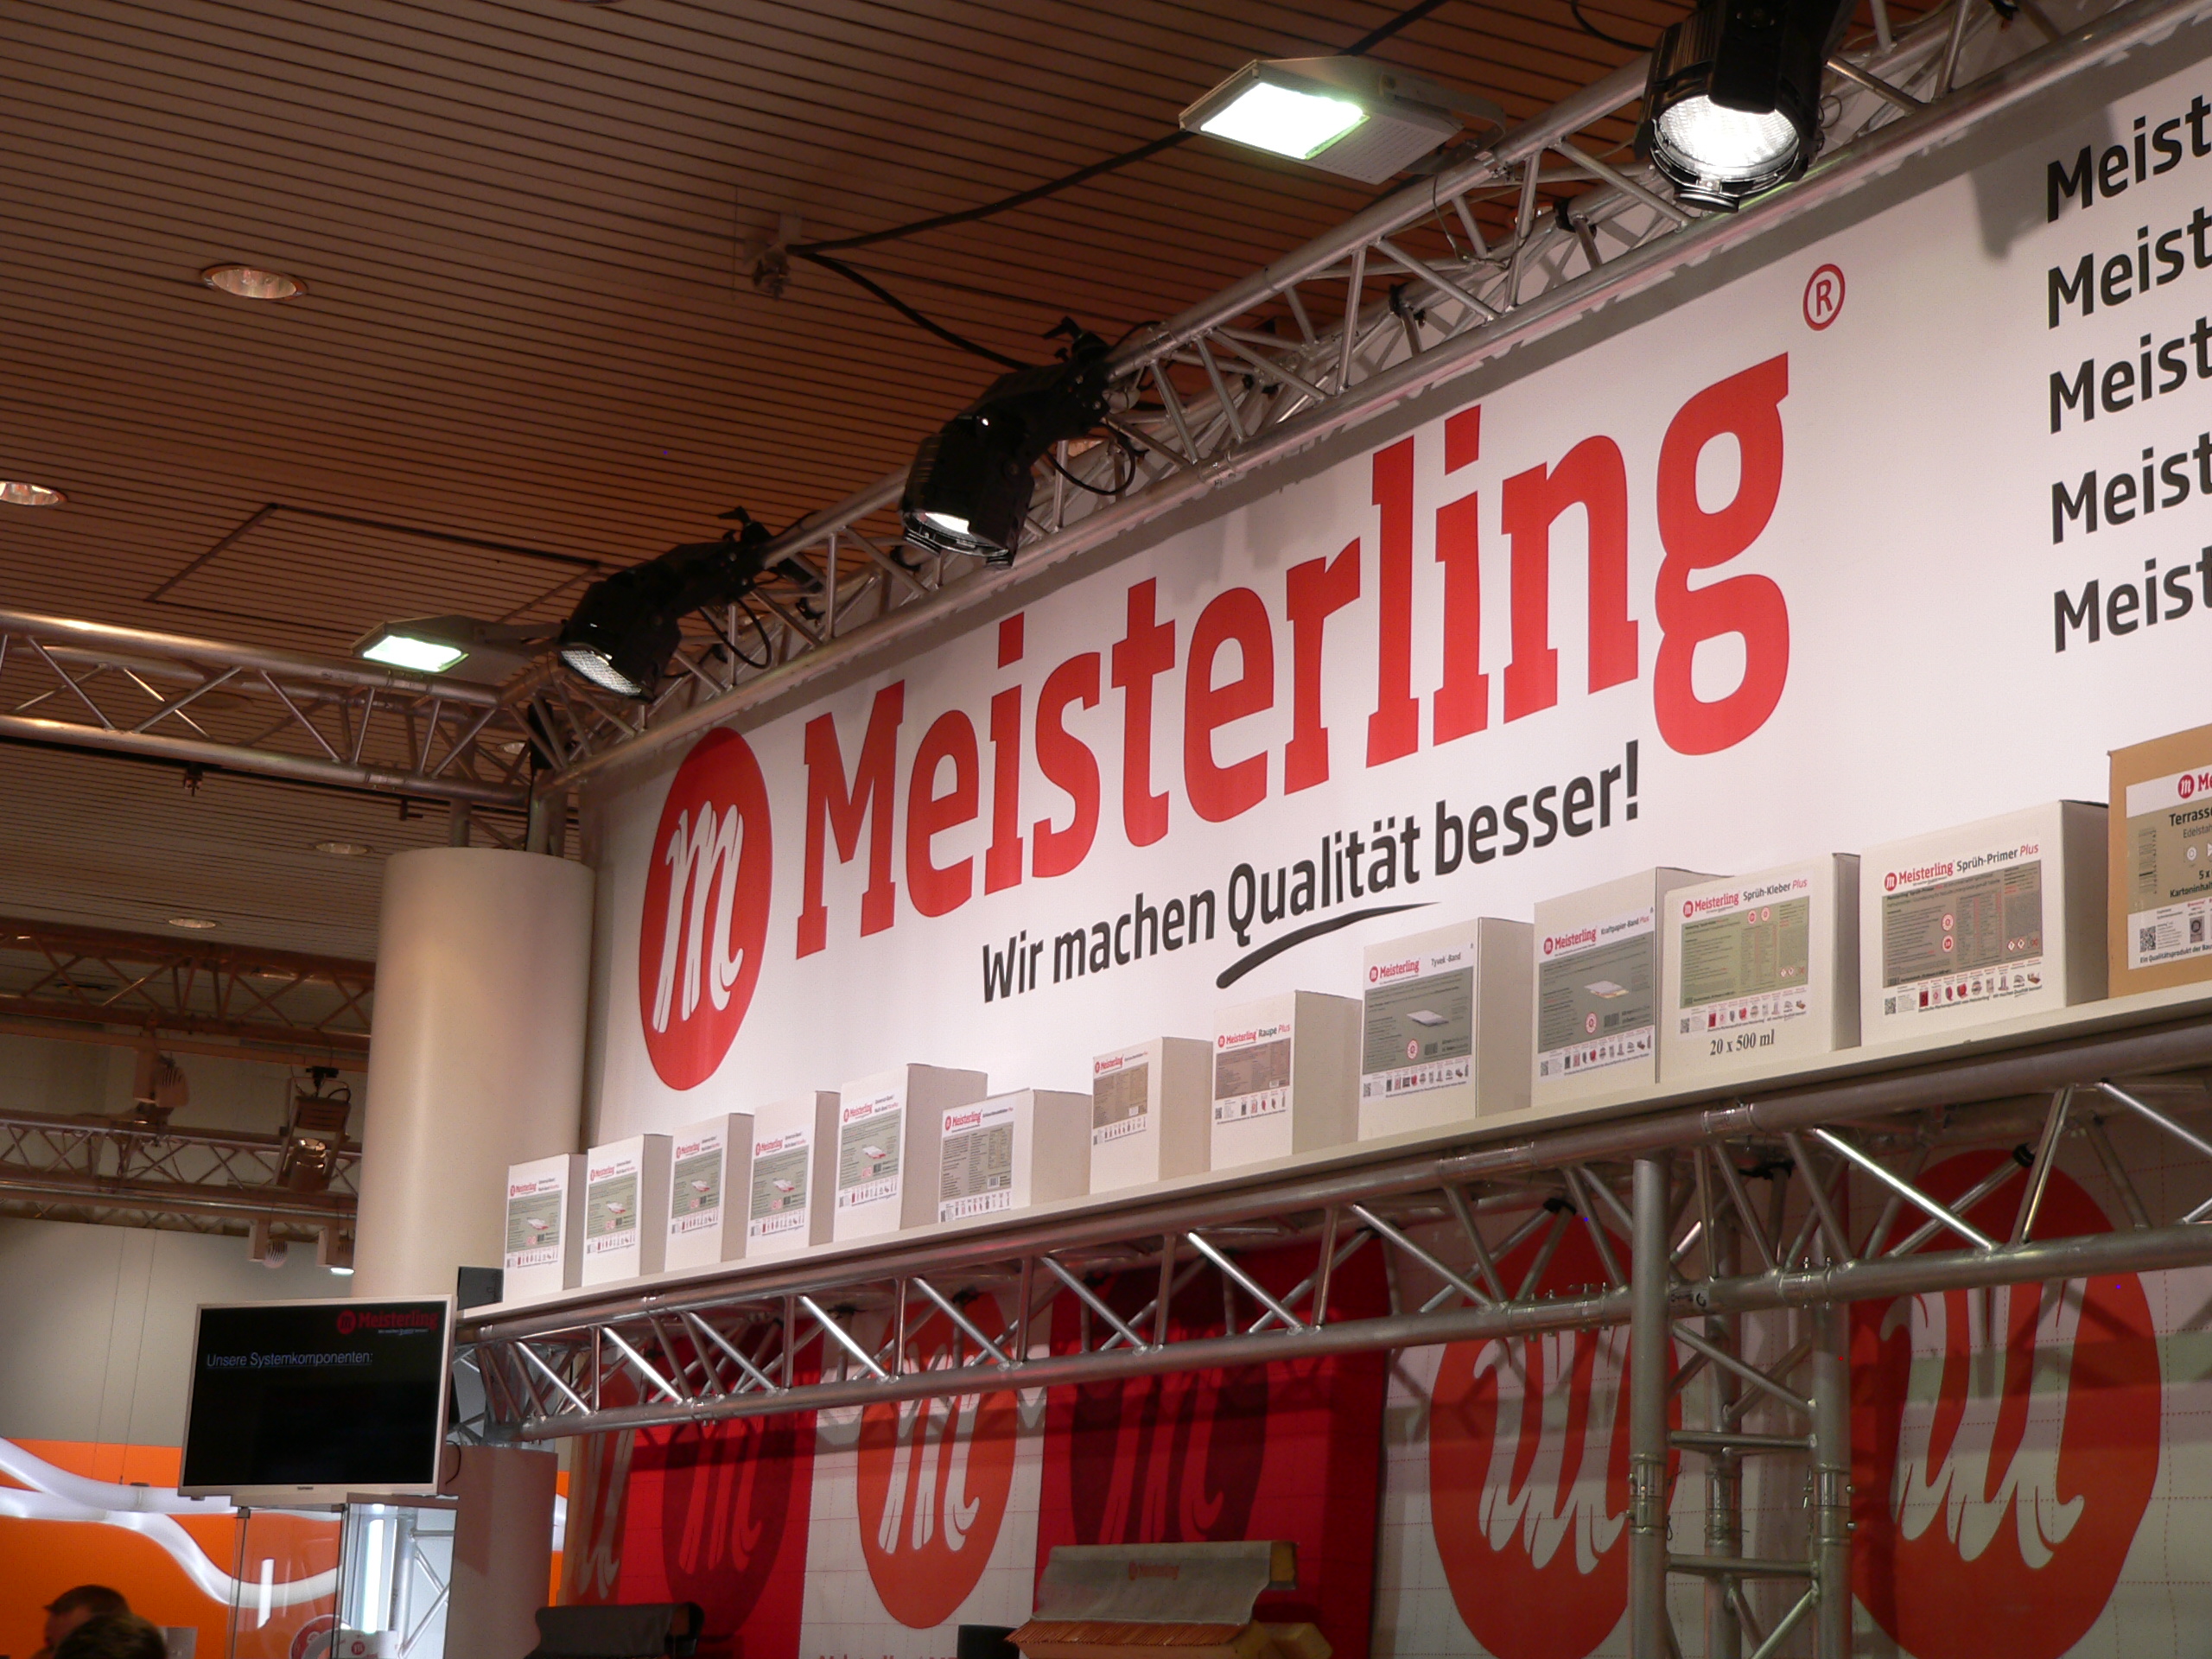 Meisterling® Messe Nordbau Neumünster 2016 - beim Meisterling